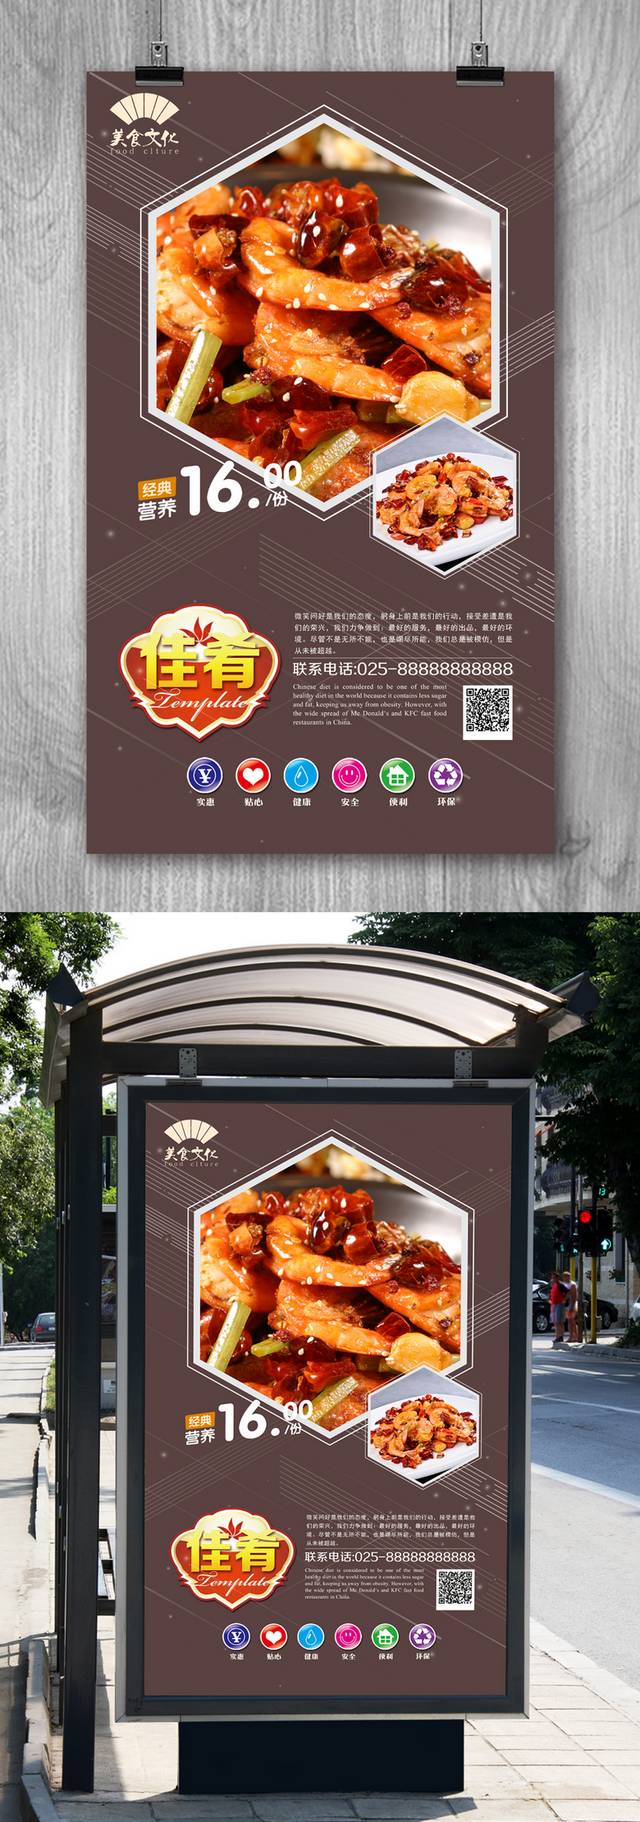 高档干锅香辣虾宣传海报设计psd